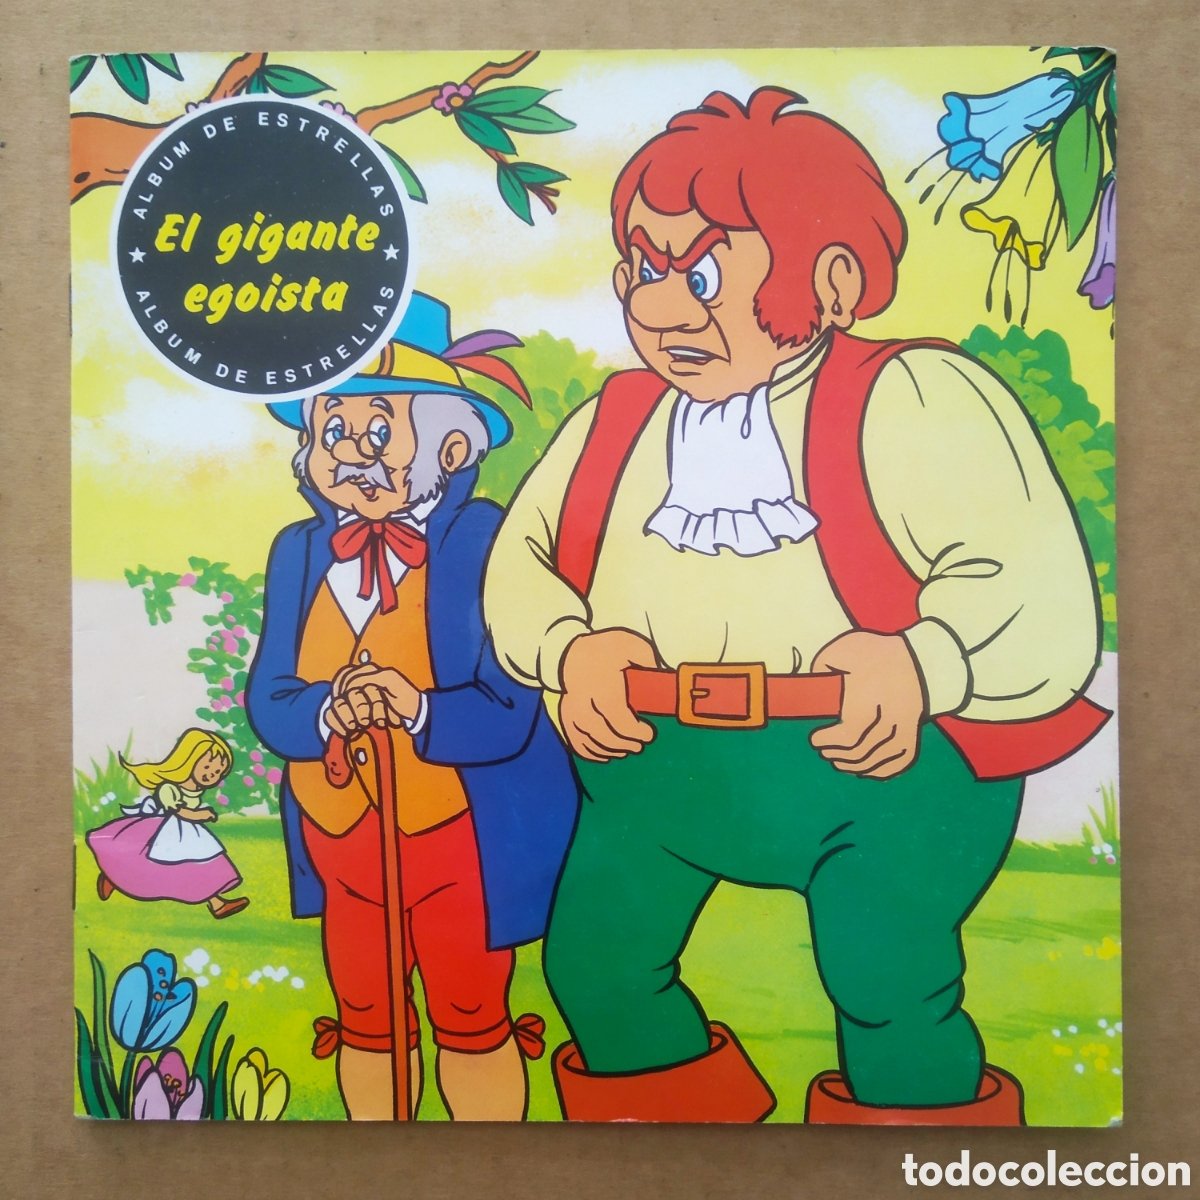 mini-cuentos n°26 (hemma). por j.l. macías y re - Buy Used fairy tale books  on todocoleccion